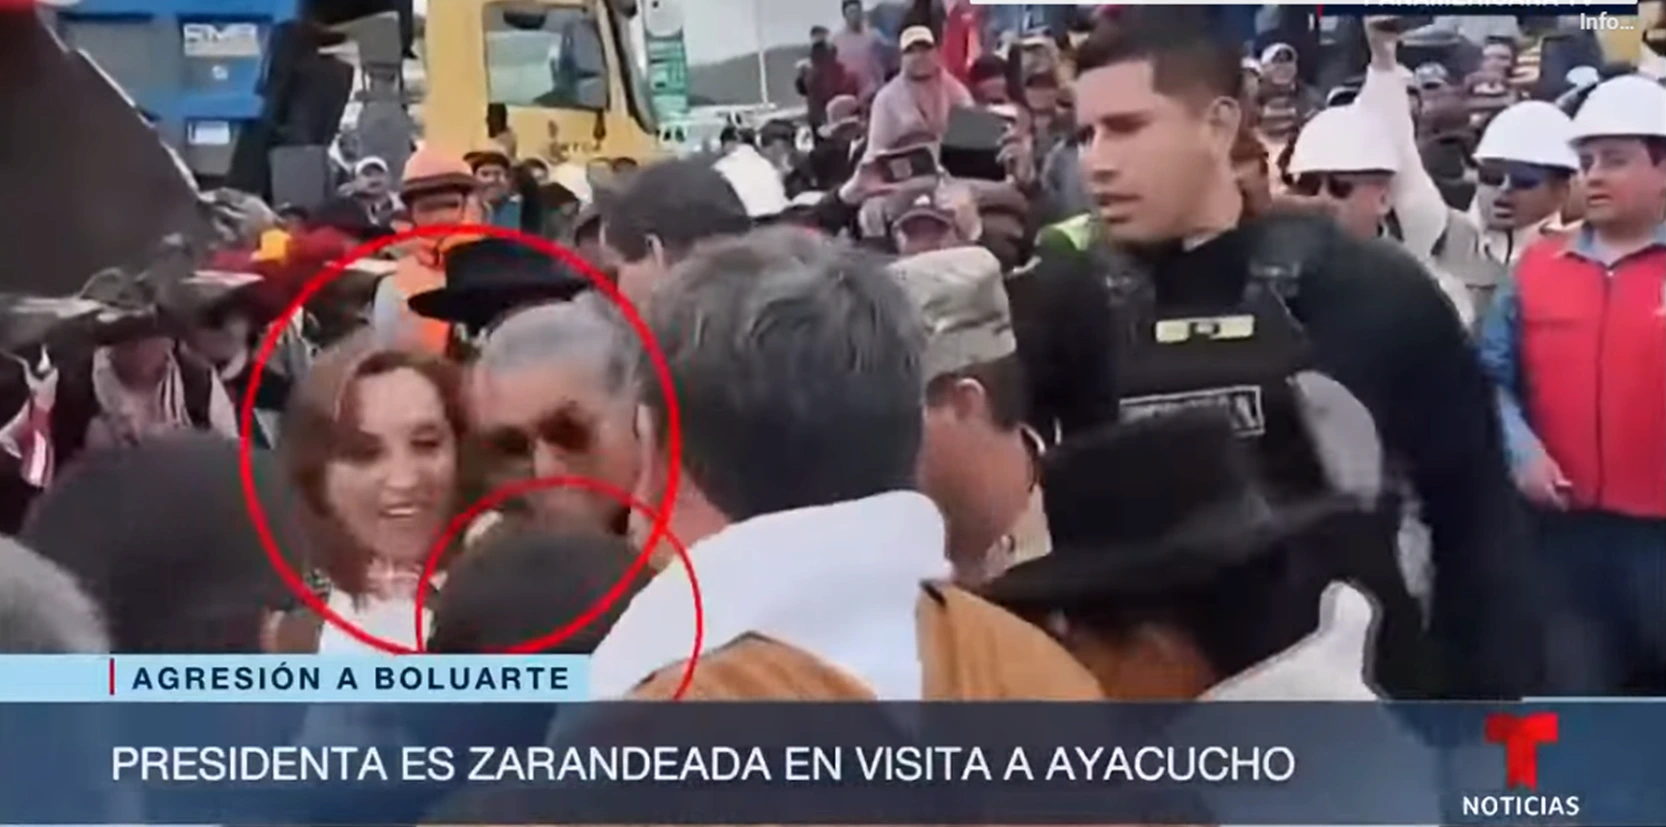 Prensa extranjera informó que dos familiares de personas asesinadas durante las protestas contra el gobierno de Bolarte en Ayacucho la encararon, gritaron "asesina" y una logró jalarle el cabello. (Foto: captura de video de Telemundo).